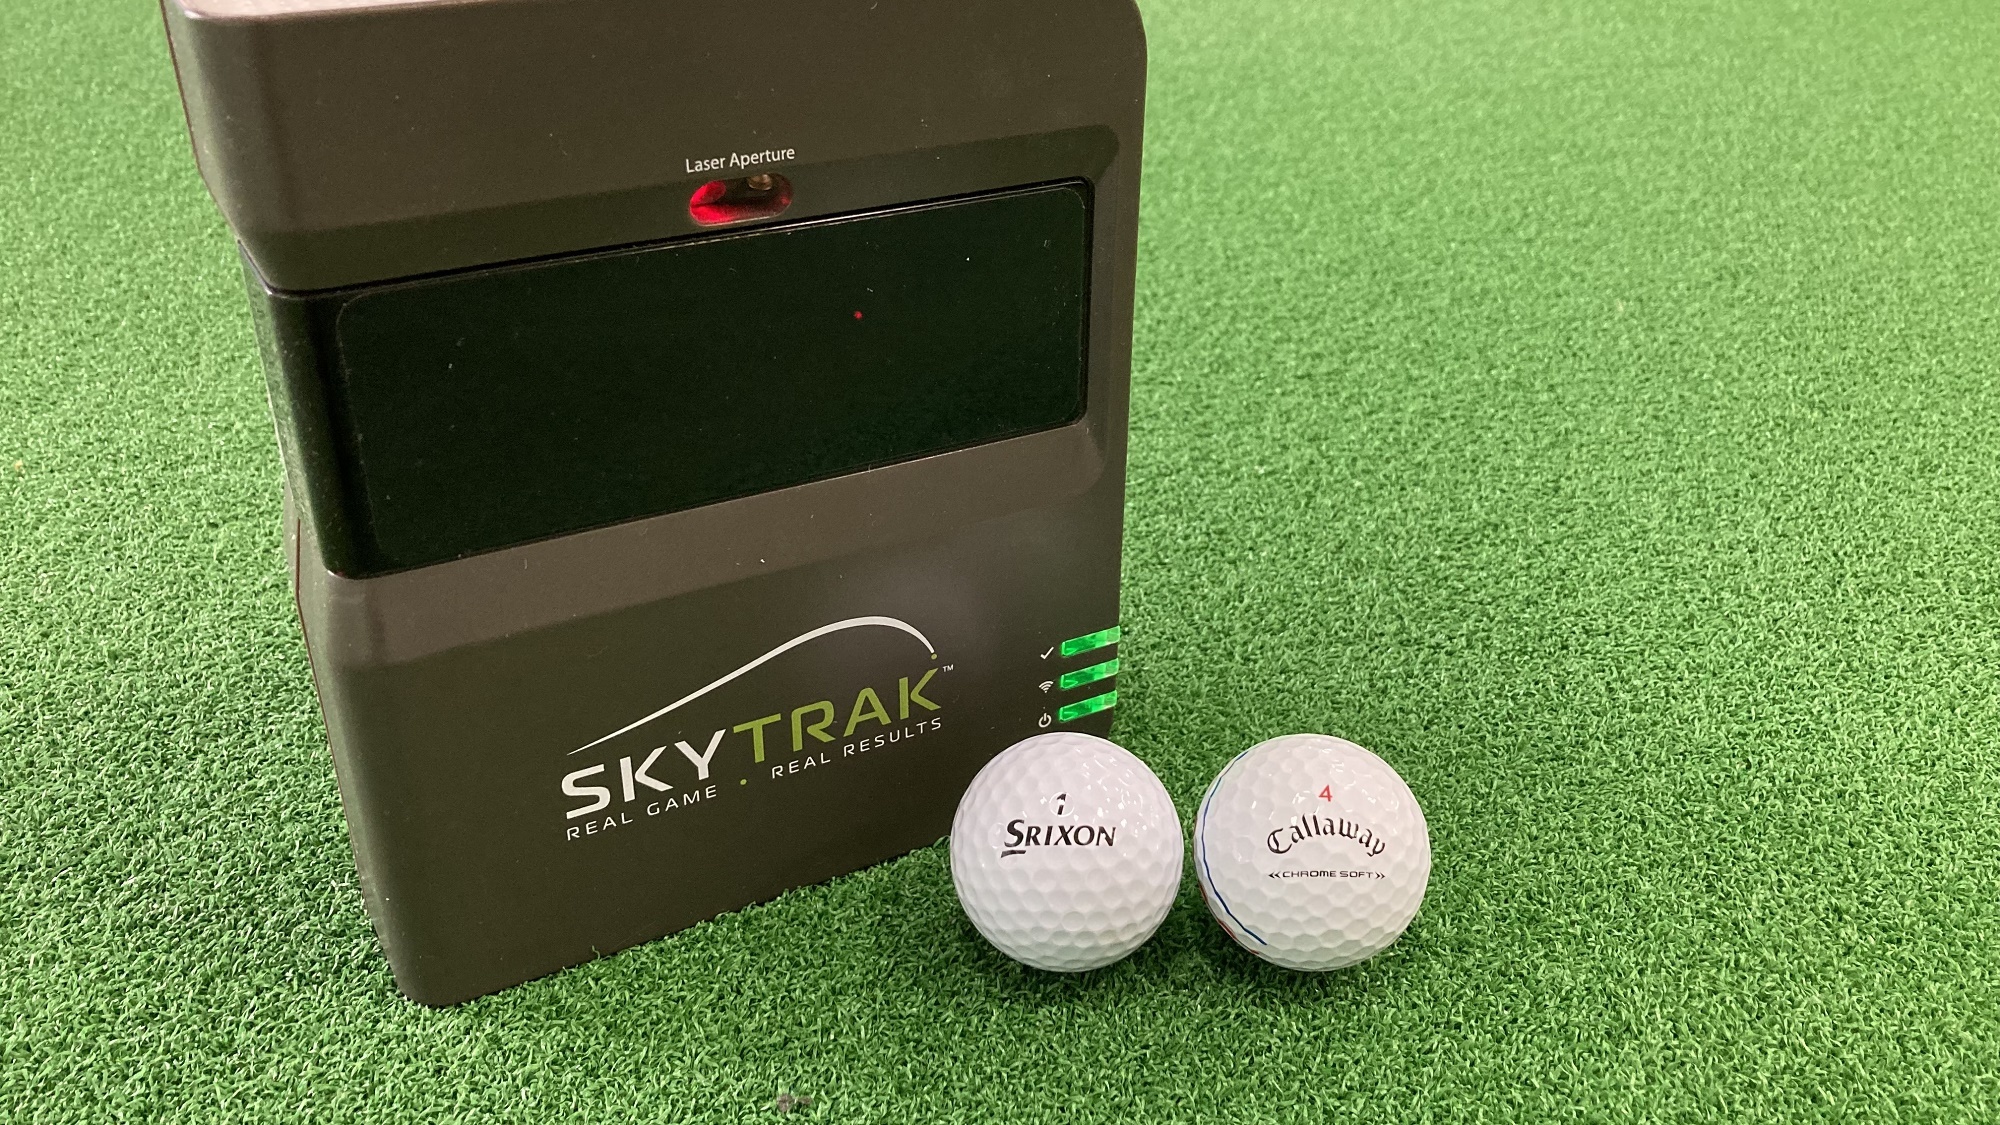 使用した弾道測定器は、日本プロゴルフ協会推薦のSKYTRAK（スカイトラック）